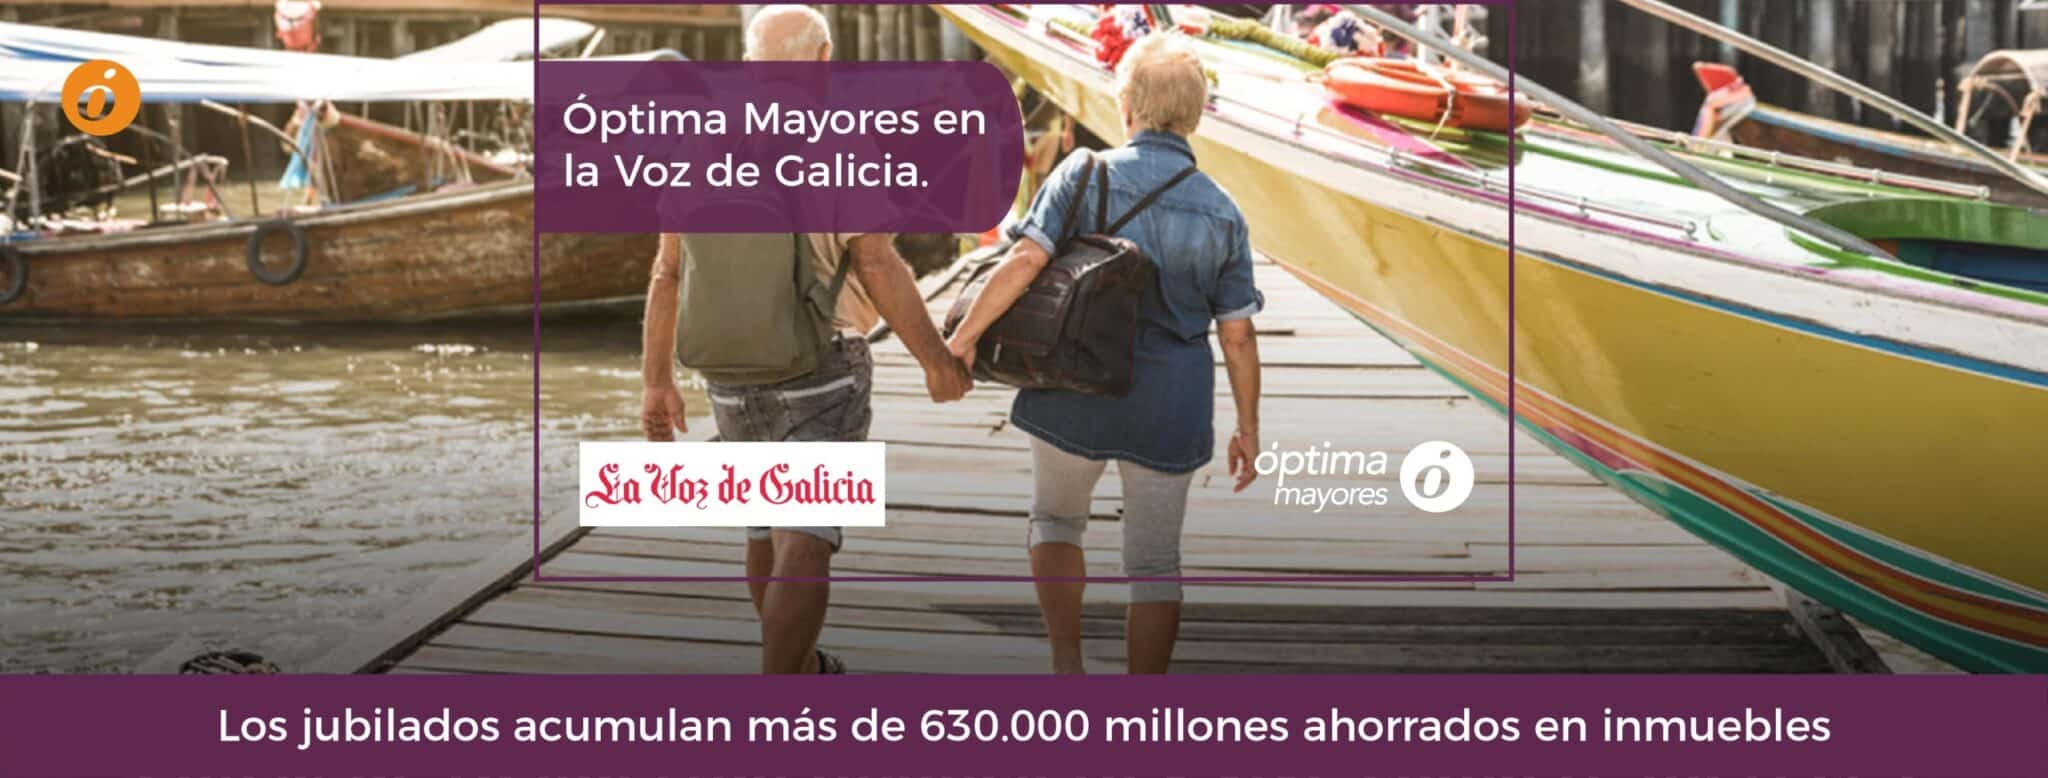 Óptima Mayores en La Voz de Galicia: “Los jubilados acumulan más de 630.000 millones ahorrados en inmuebles”